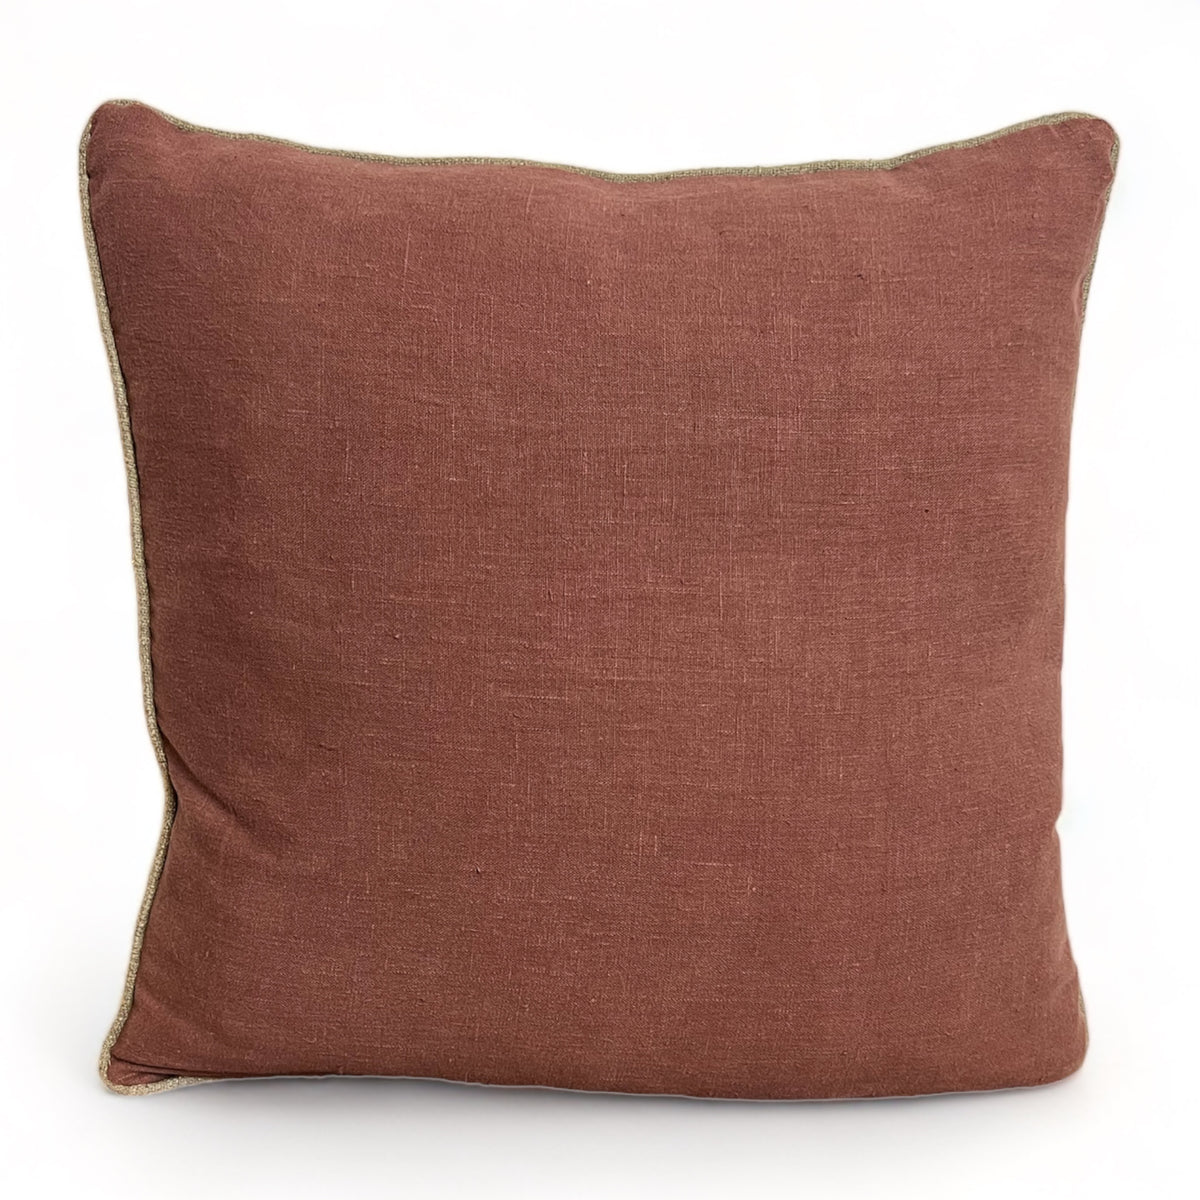 Plum Linen Pillow